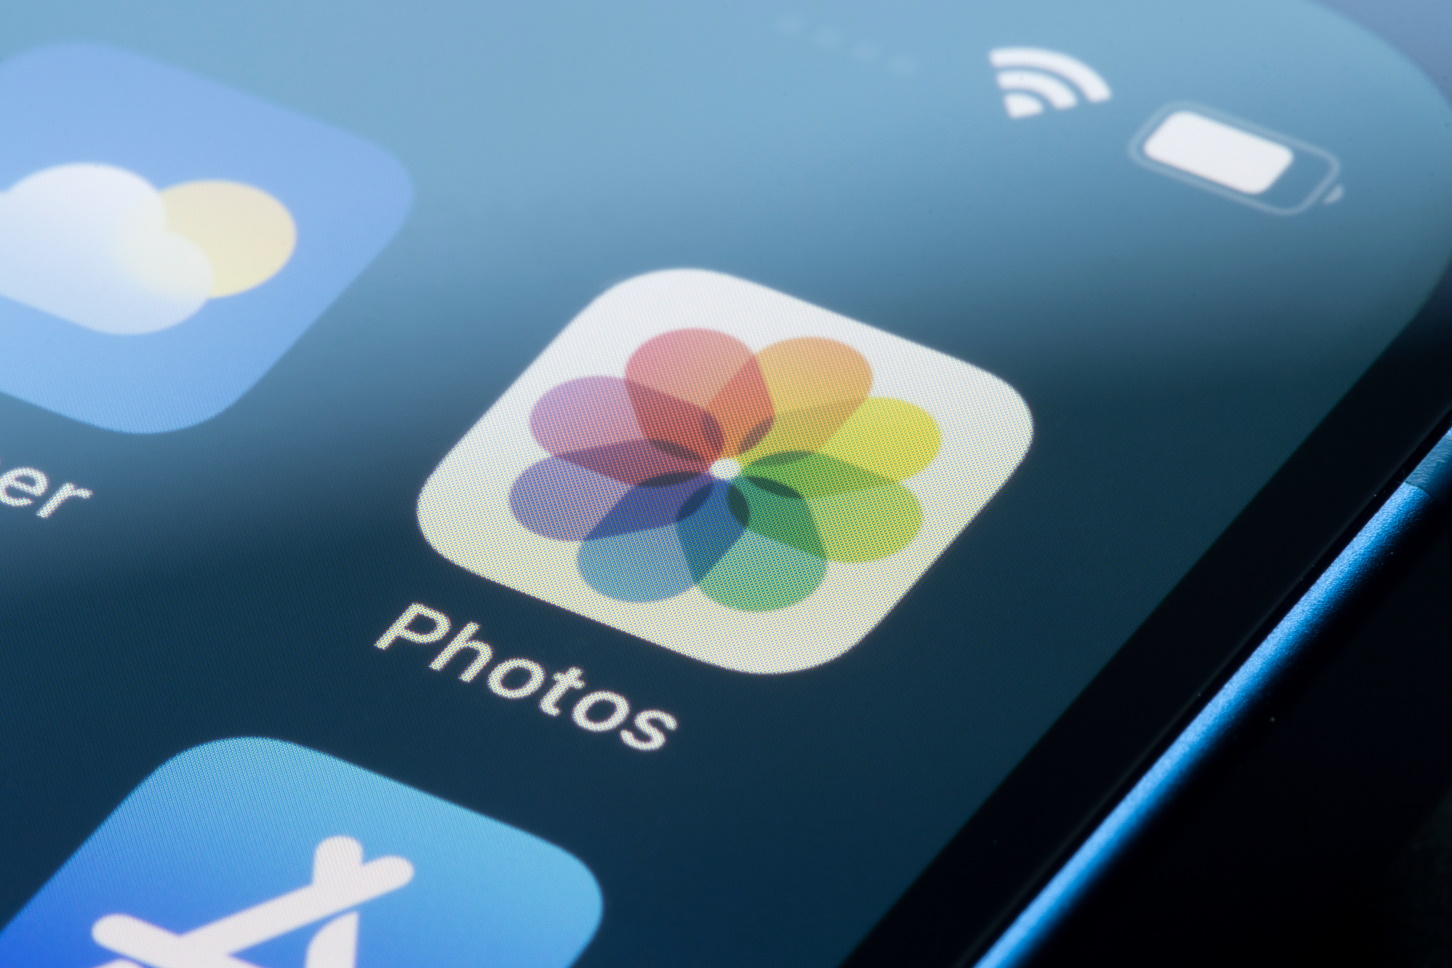 iOS 15.5 va bloquer les lieux sensibles de vos souvenirs photo